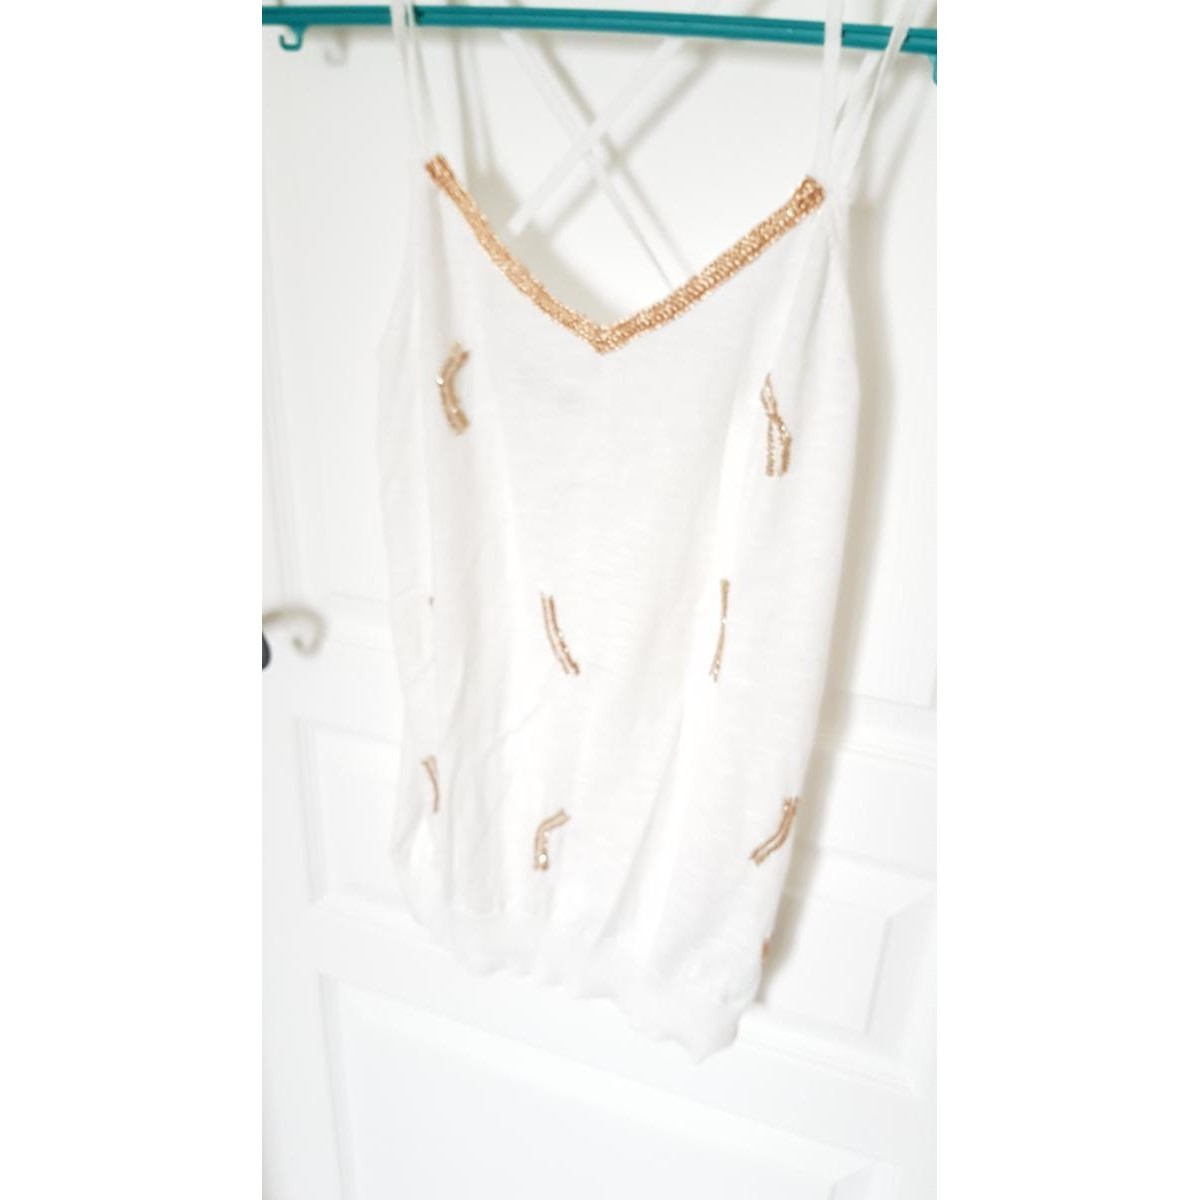 Vêtements Femme sweatshirt med elefanttryk Top blanc détails pailletés dorés Blanc